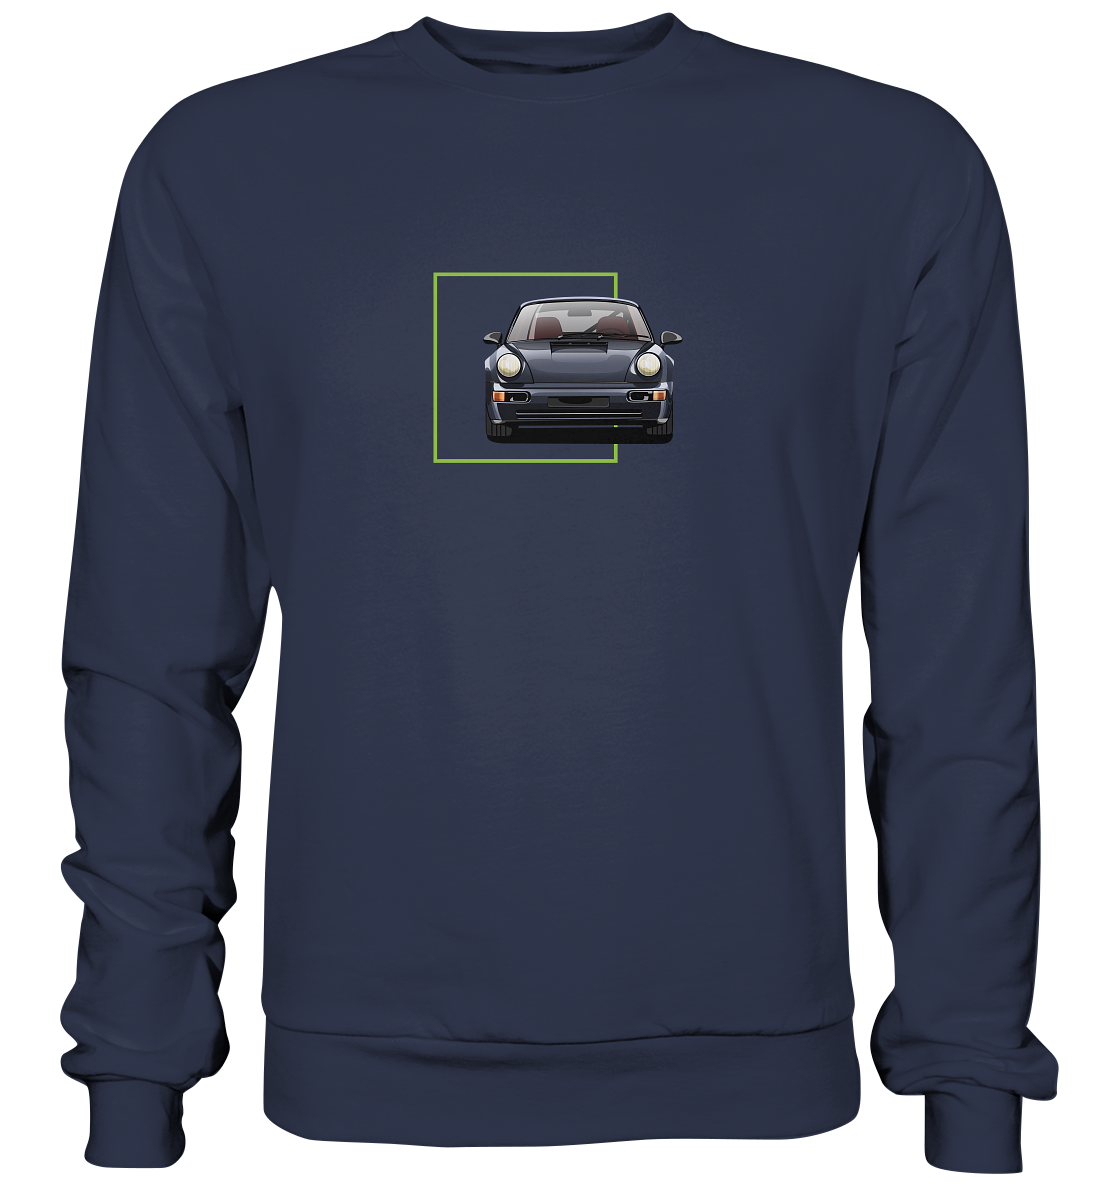 The modern classic - Premium Sweatshirt